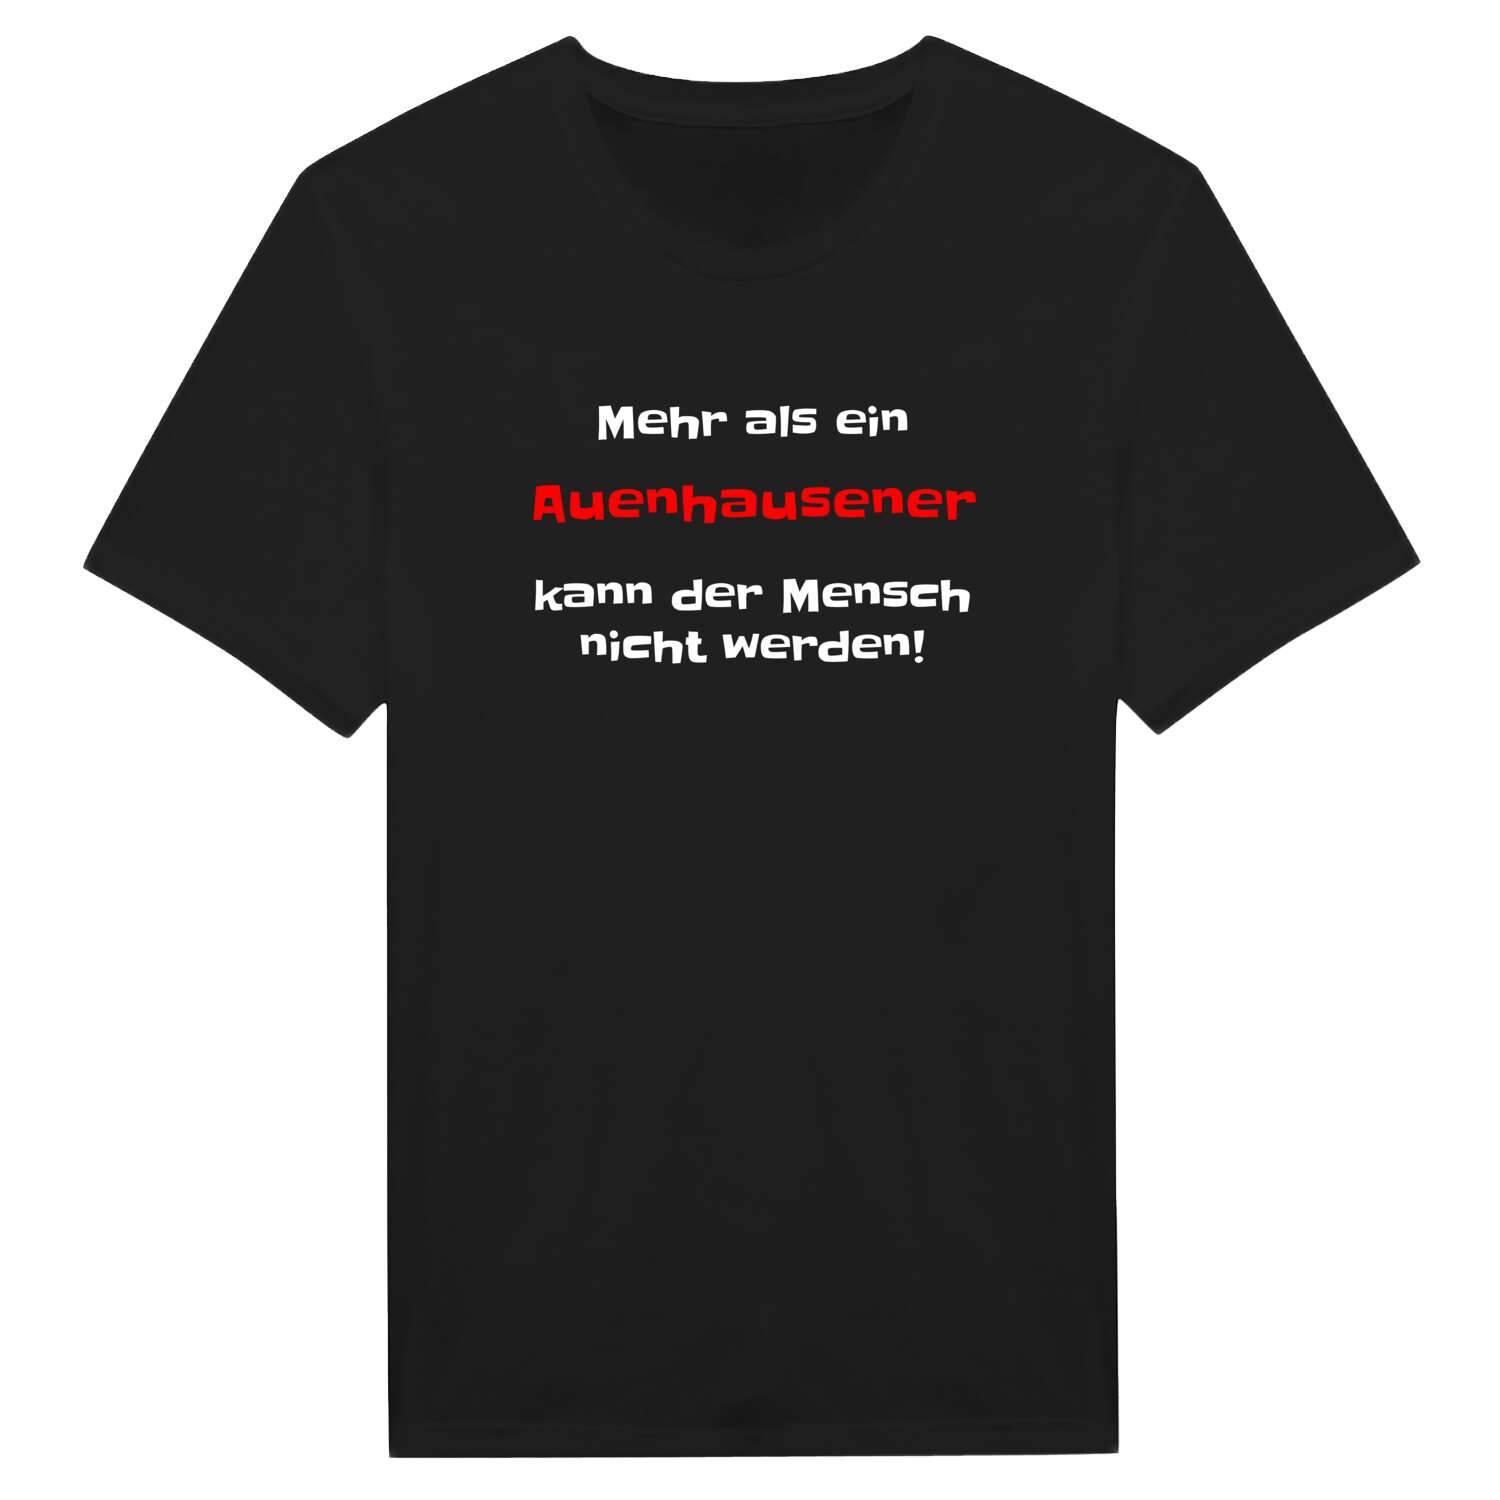 Auenhausen T-Shirt »Mehr als ein«